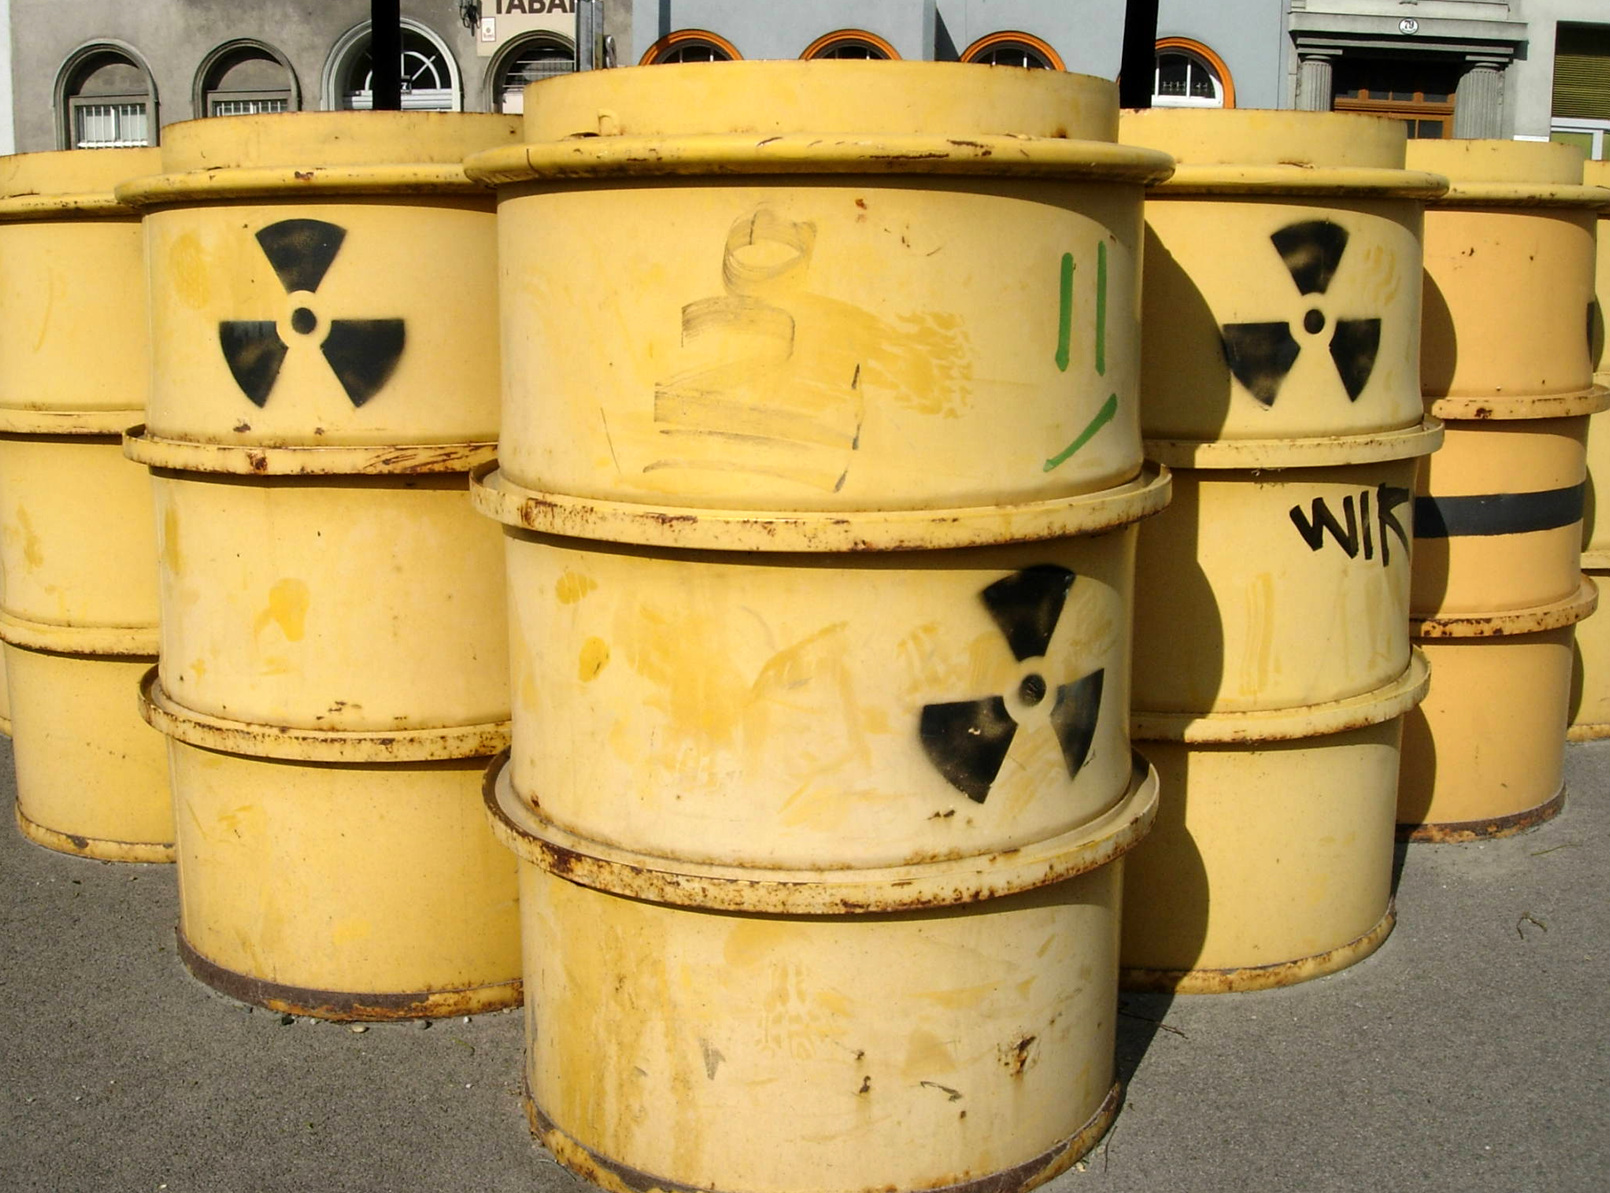 Радиоактивные контейнеры